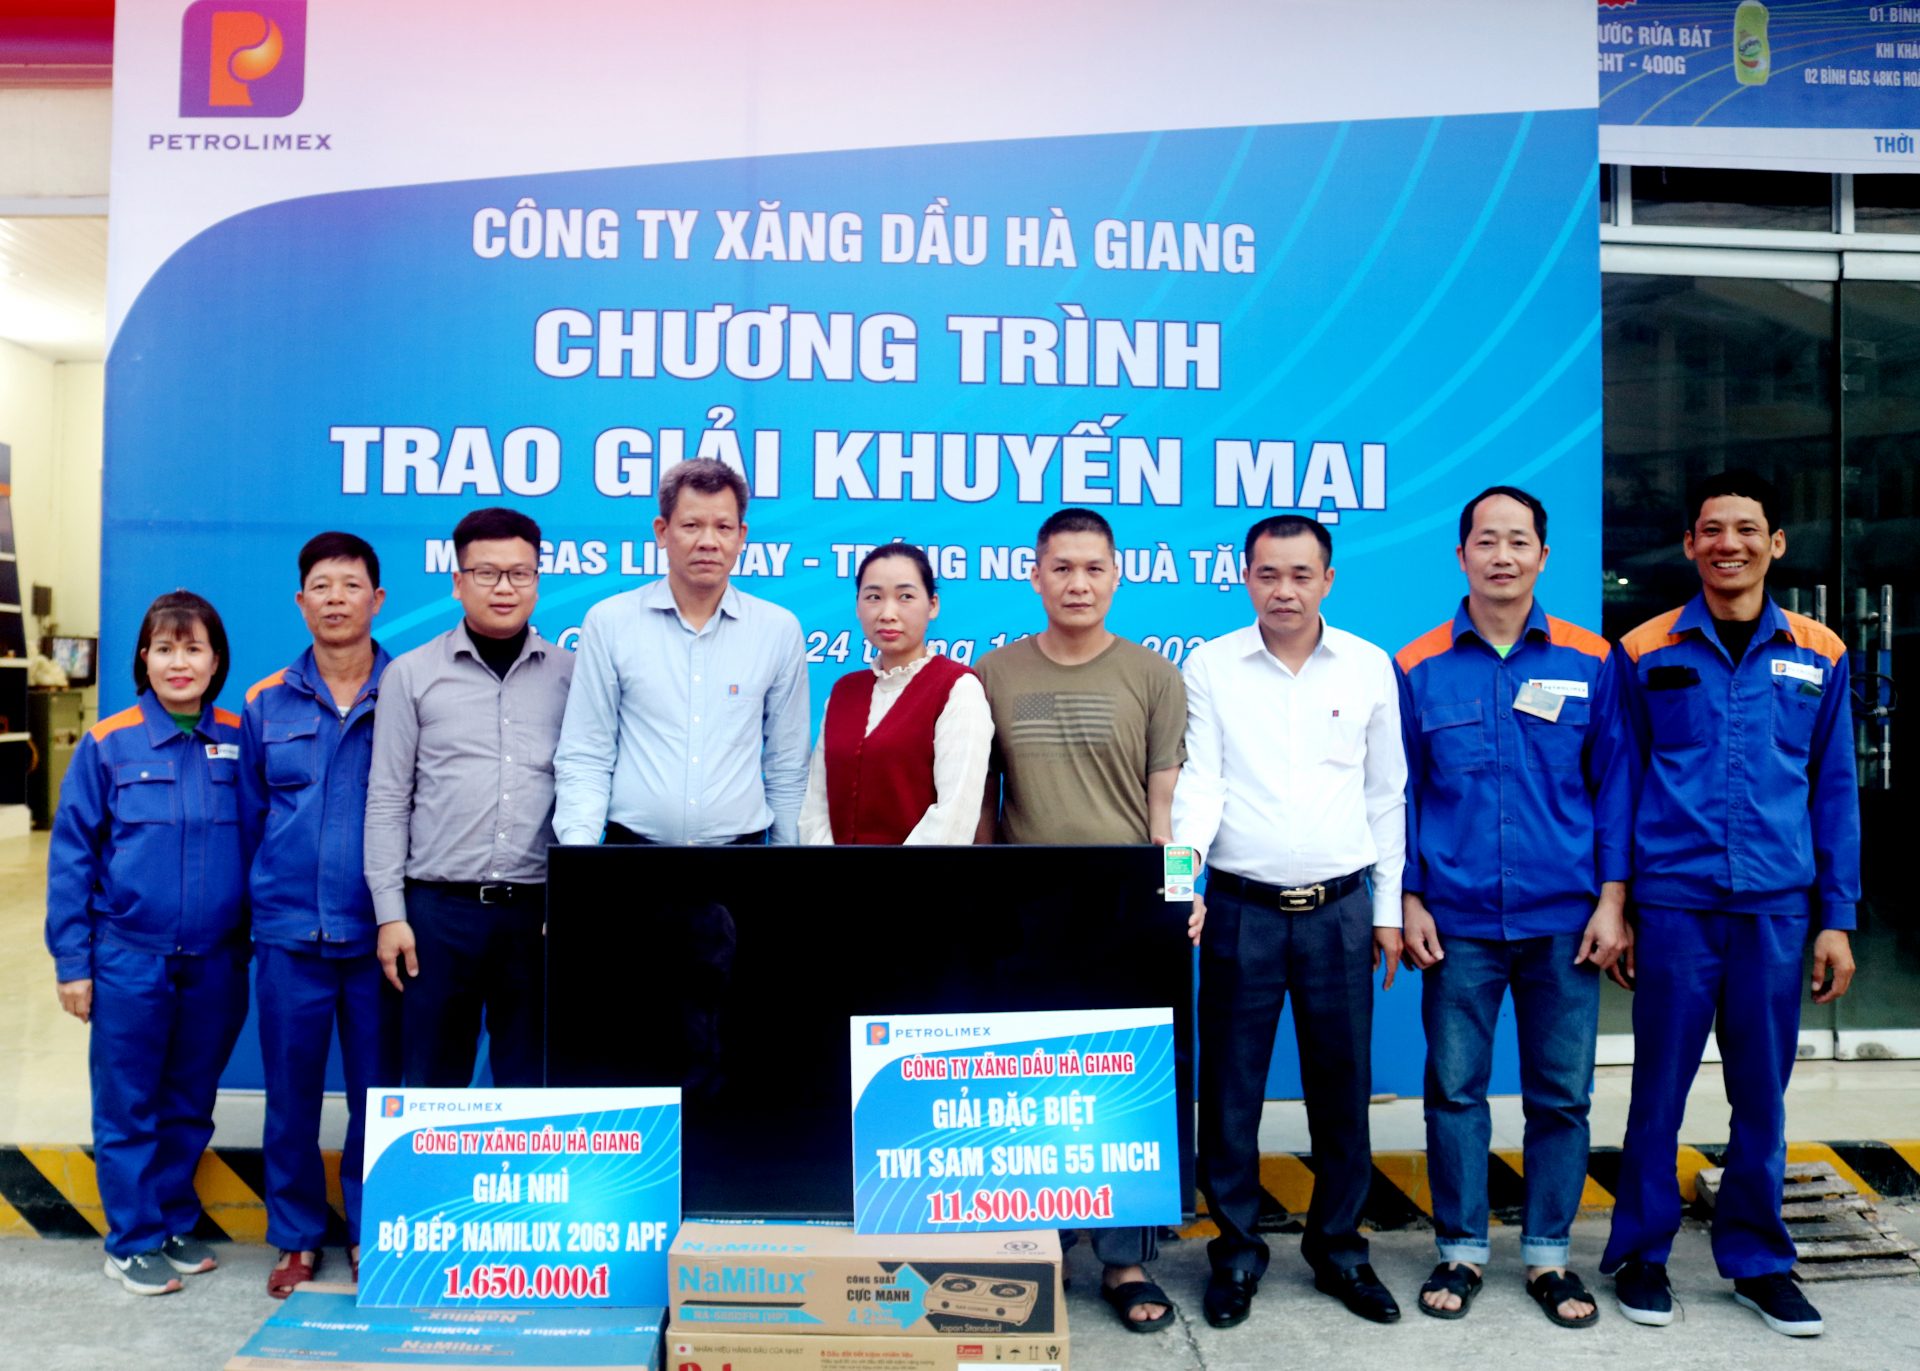 Lãnh đạo Công ty Xăng dầu Hà Giang trao giải Đặc biệt và giải Nhì cho khách hàng trúng thưởng.